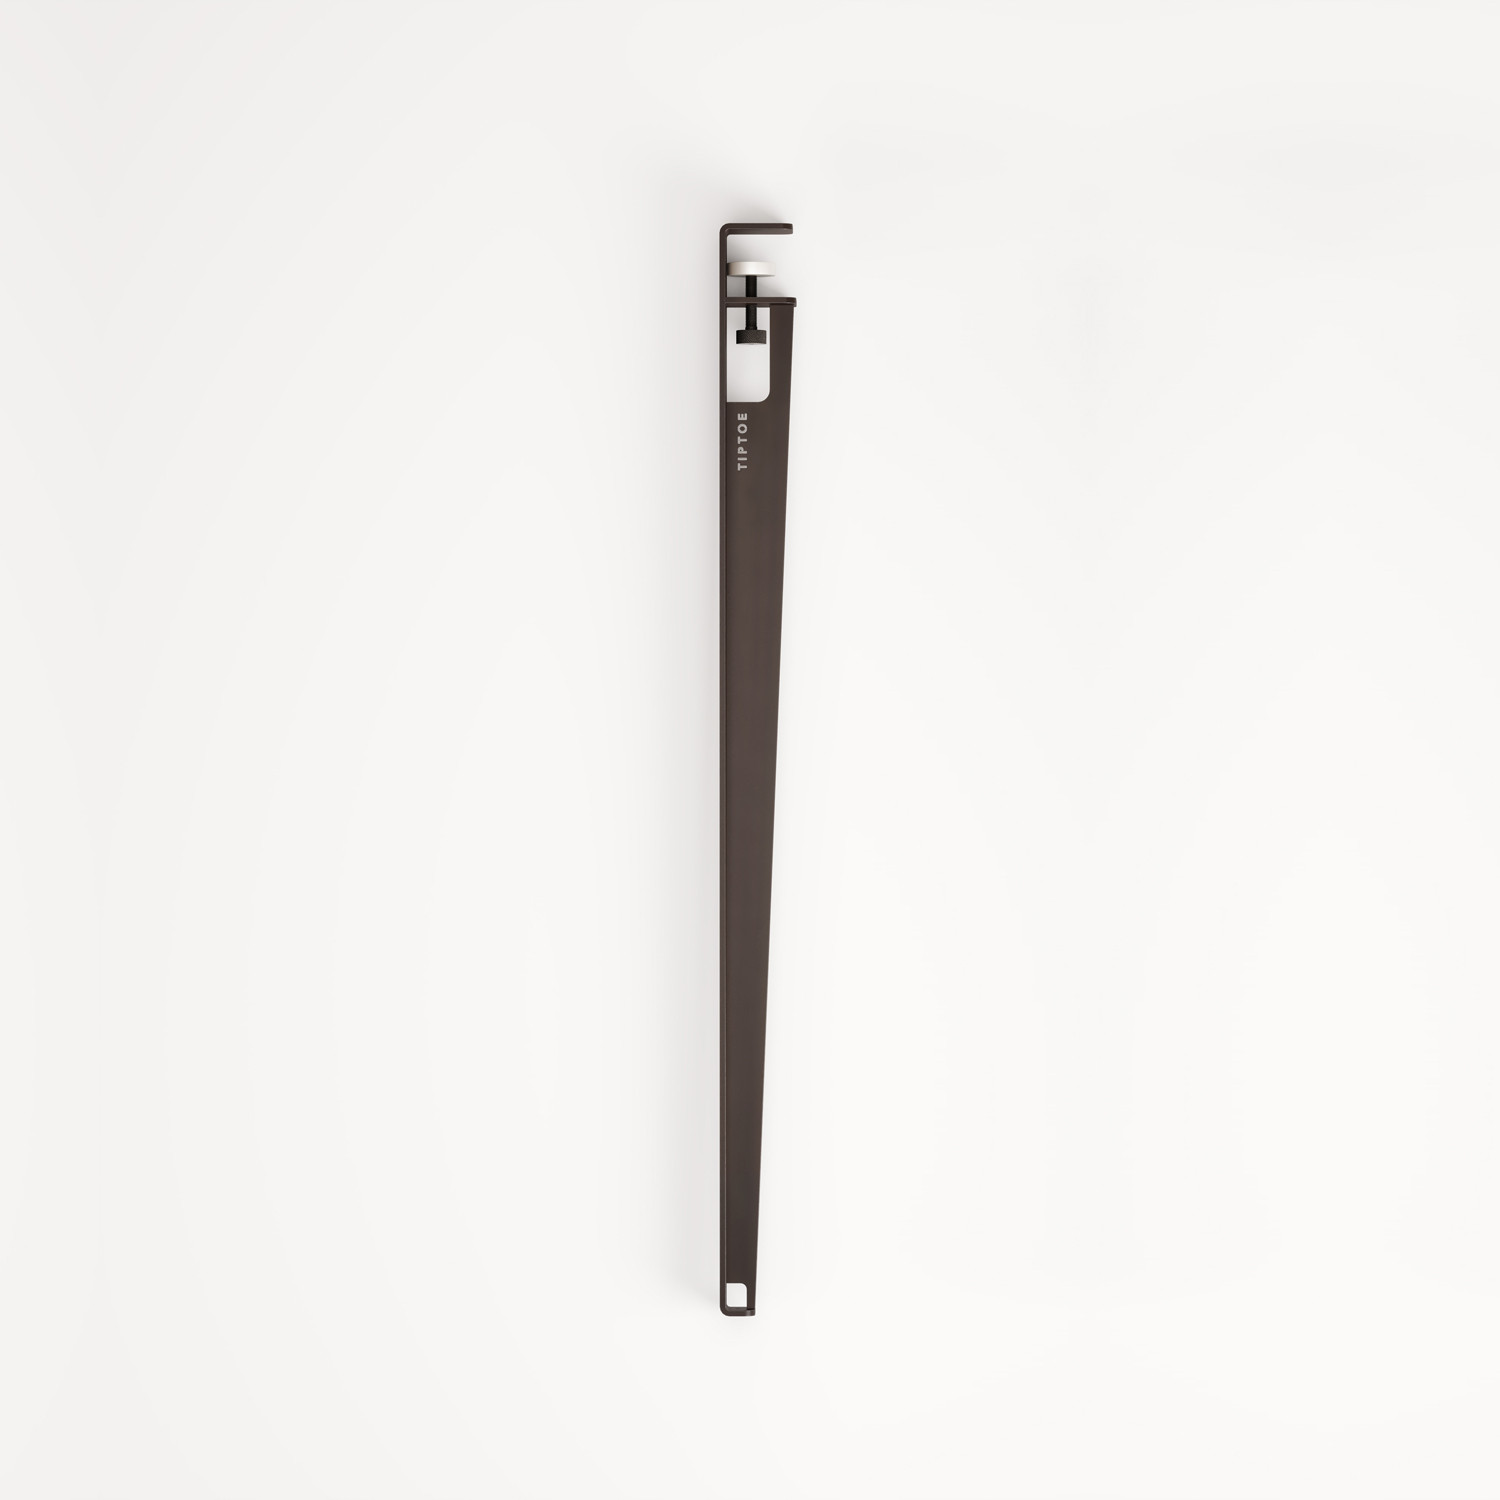 Counter table leg – 90 cm